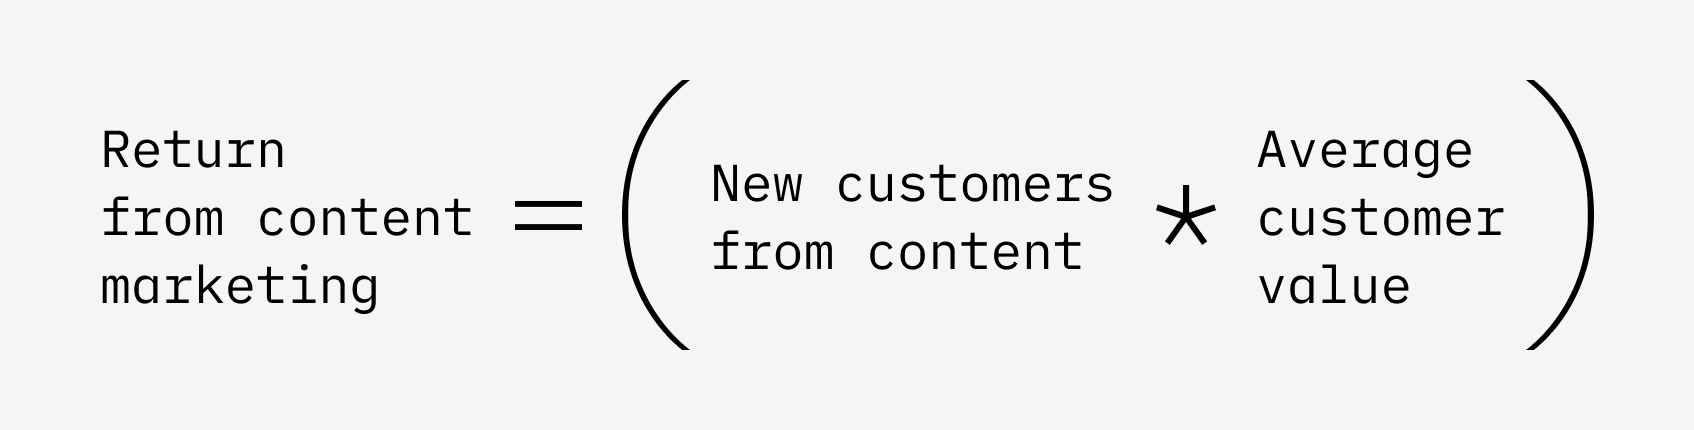 Ritorno dal content marketing = (Nuovi clienti dai contenuti * ACV)